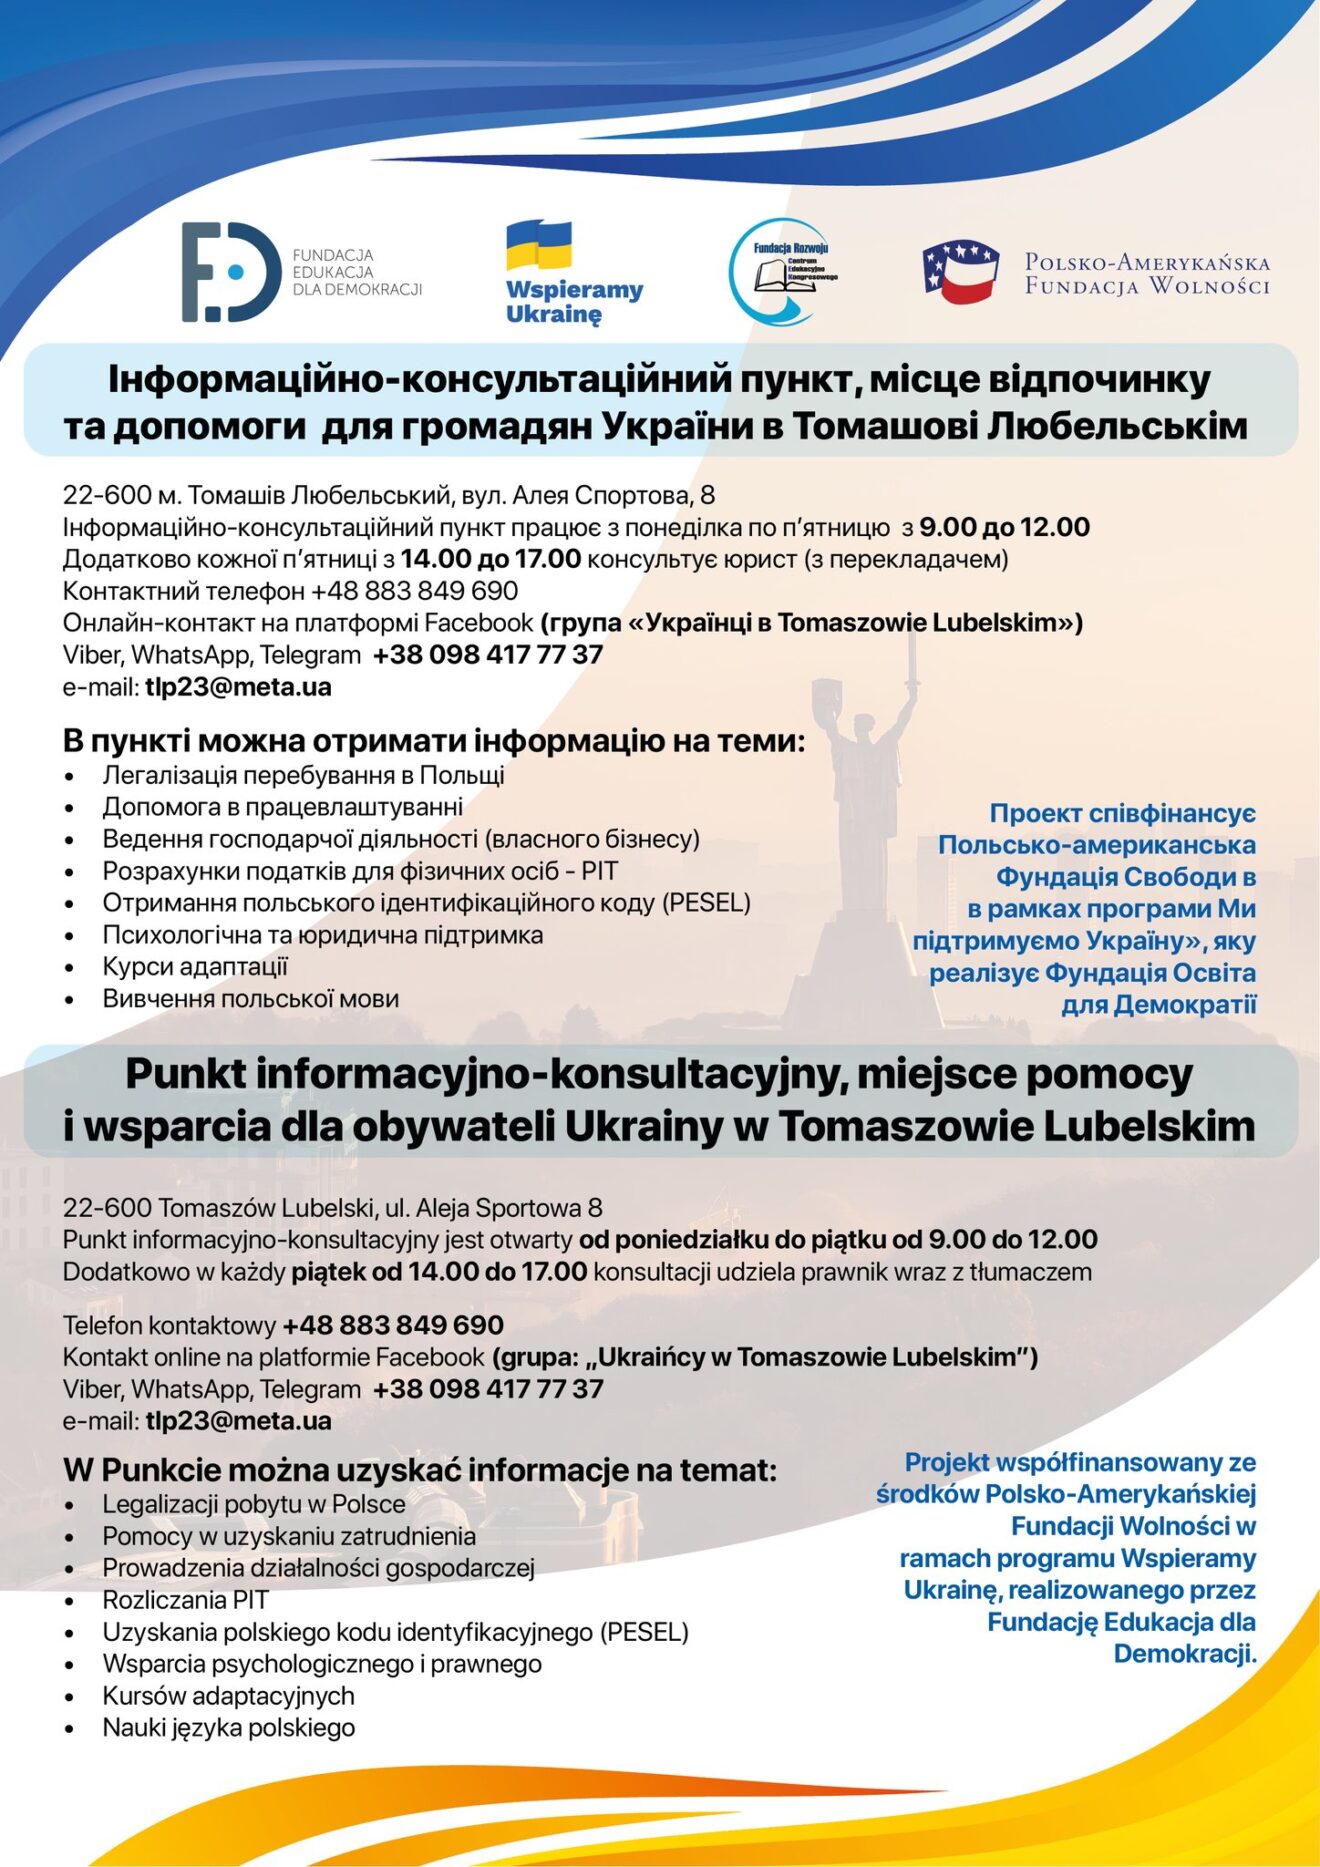 Punkt informacyjno-konsultacyjny dla obywateli Ukrainy